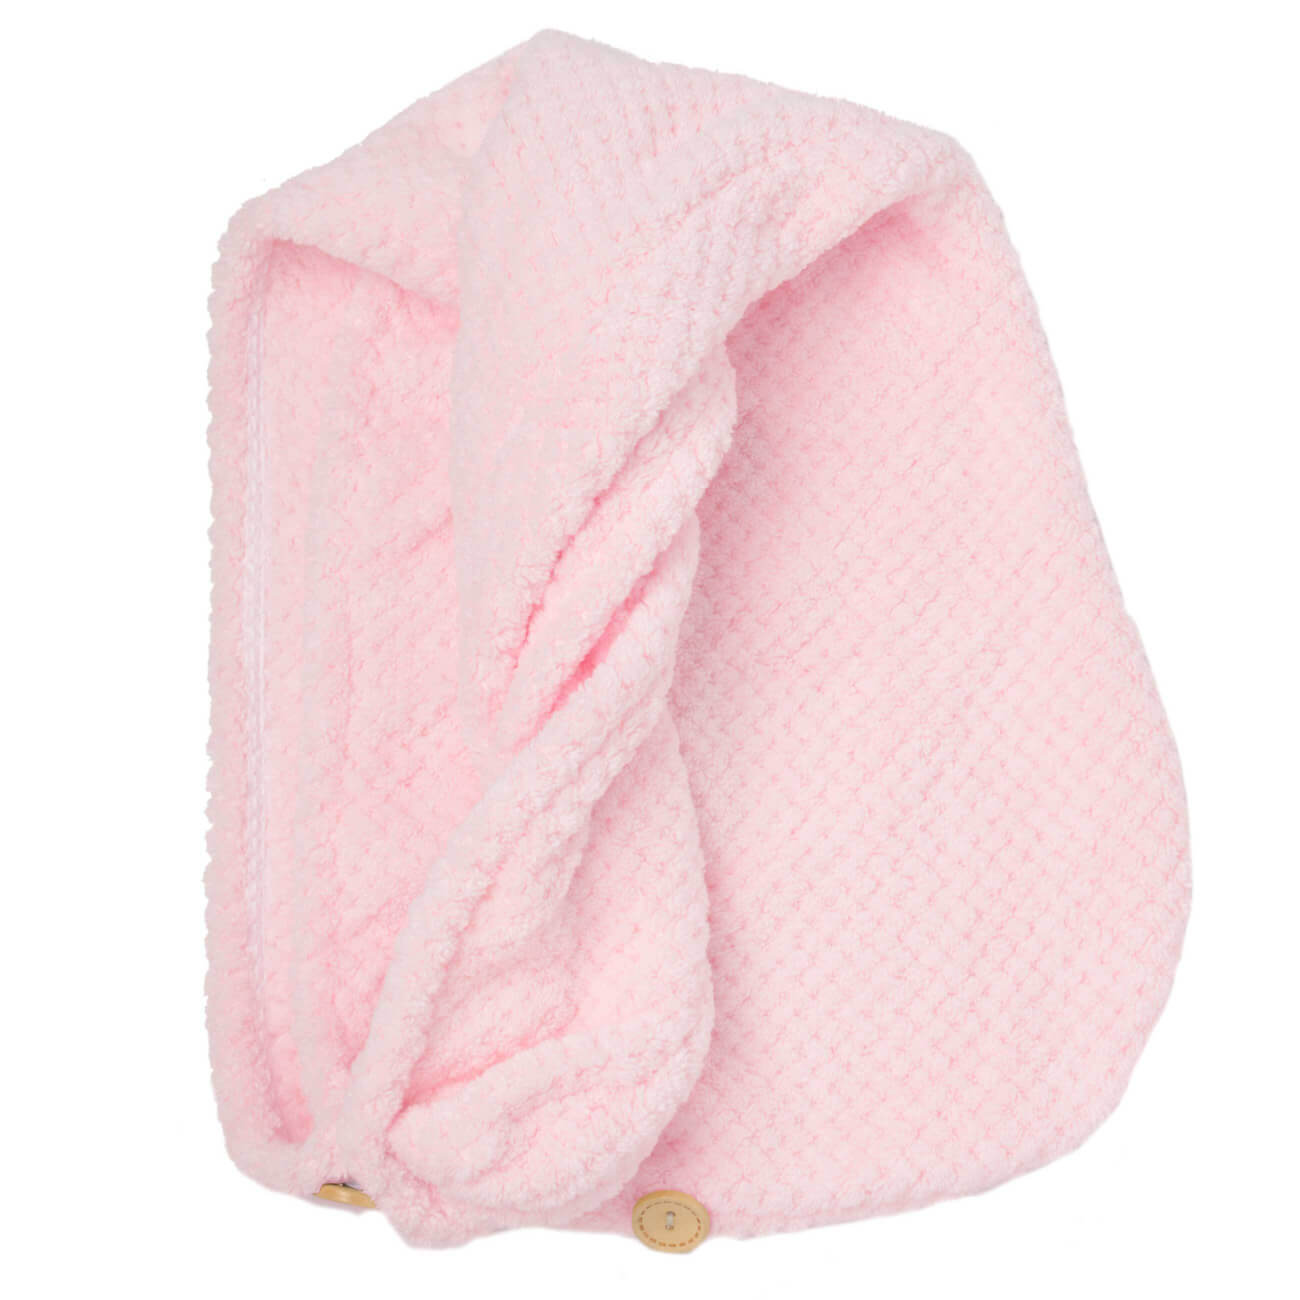 Полотенце-тюрбан для волос, 62х24 см, микроволокно, розовое, Fiber spa шар фольгированный 25 милая куколка в зеркале розовое платье